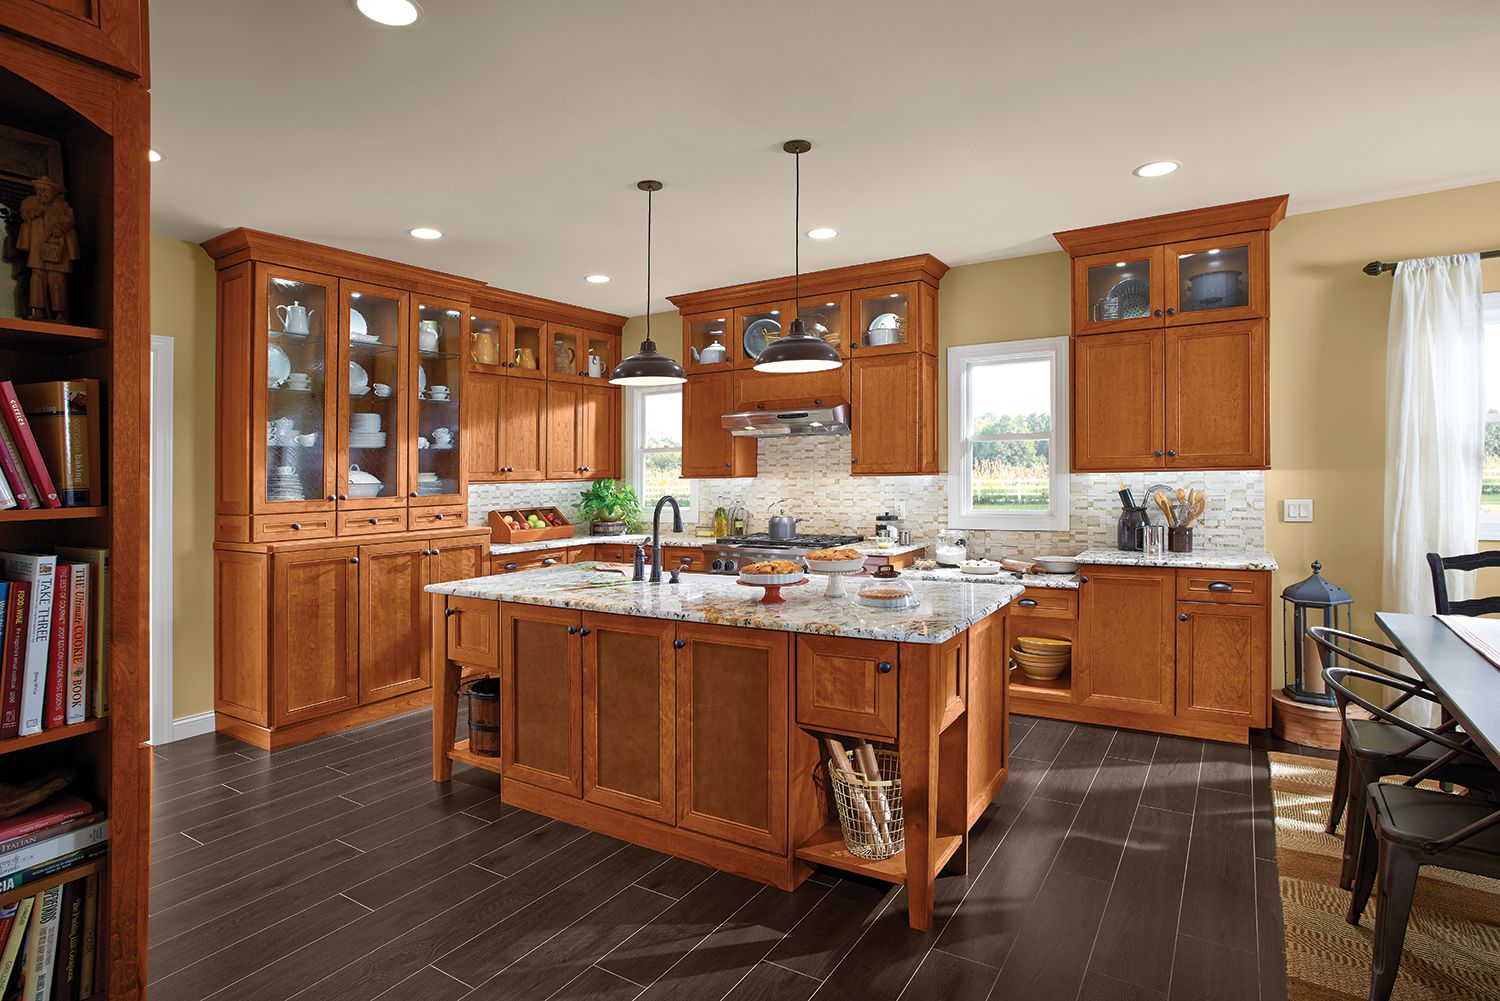 Kraftmaid Kitchen Cabinets Online - Image to u